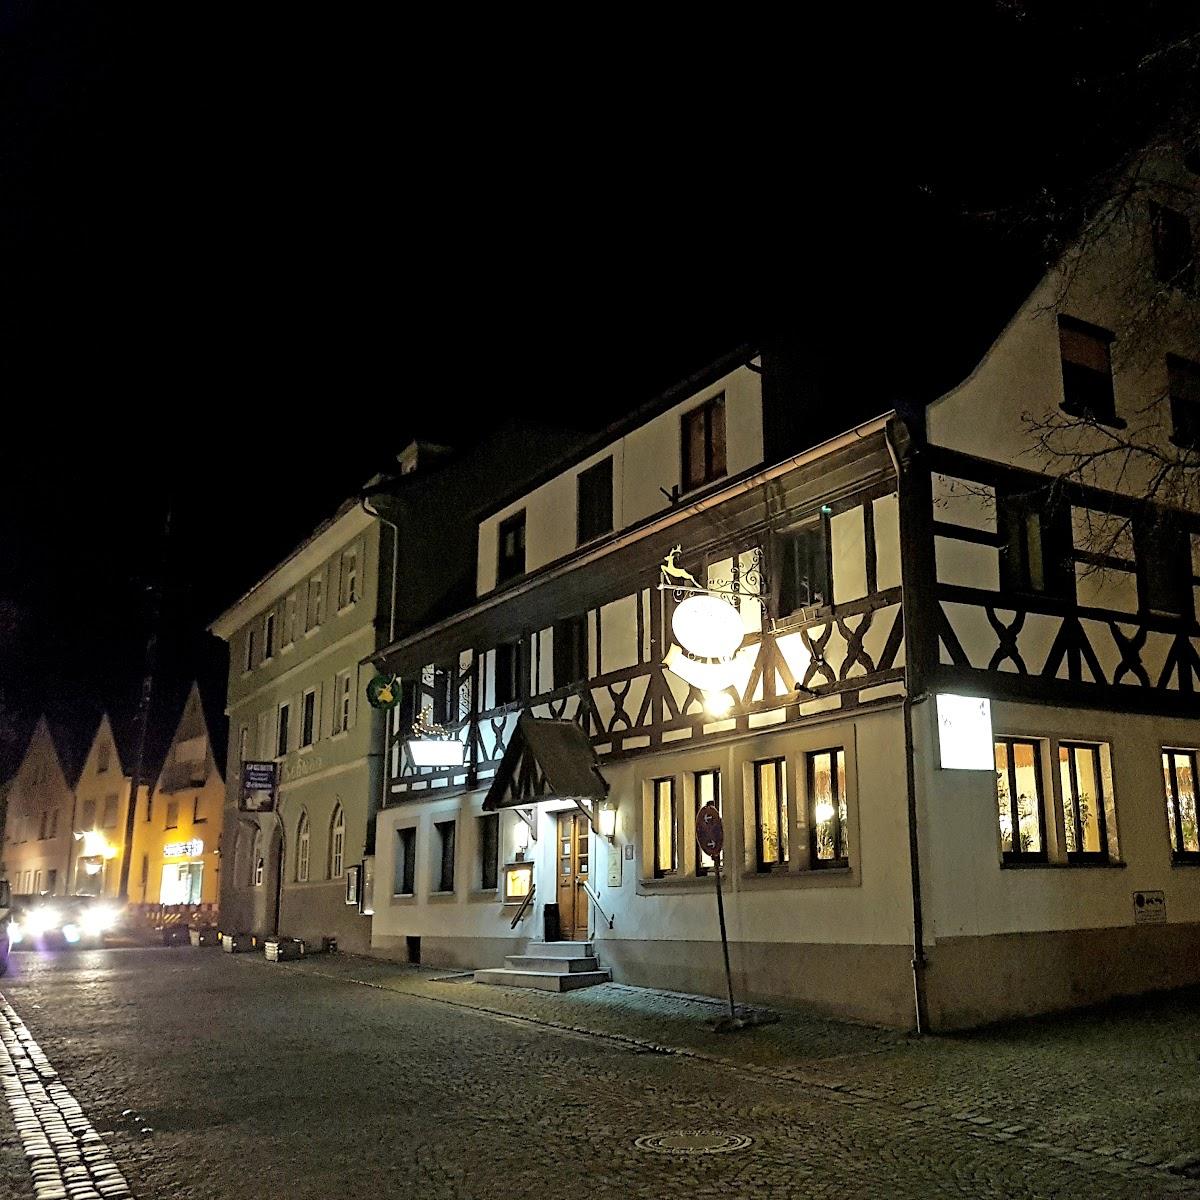 Restaurant "Goldener Hirsch" in Burgebrach